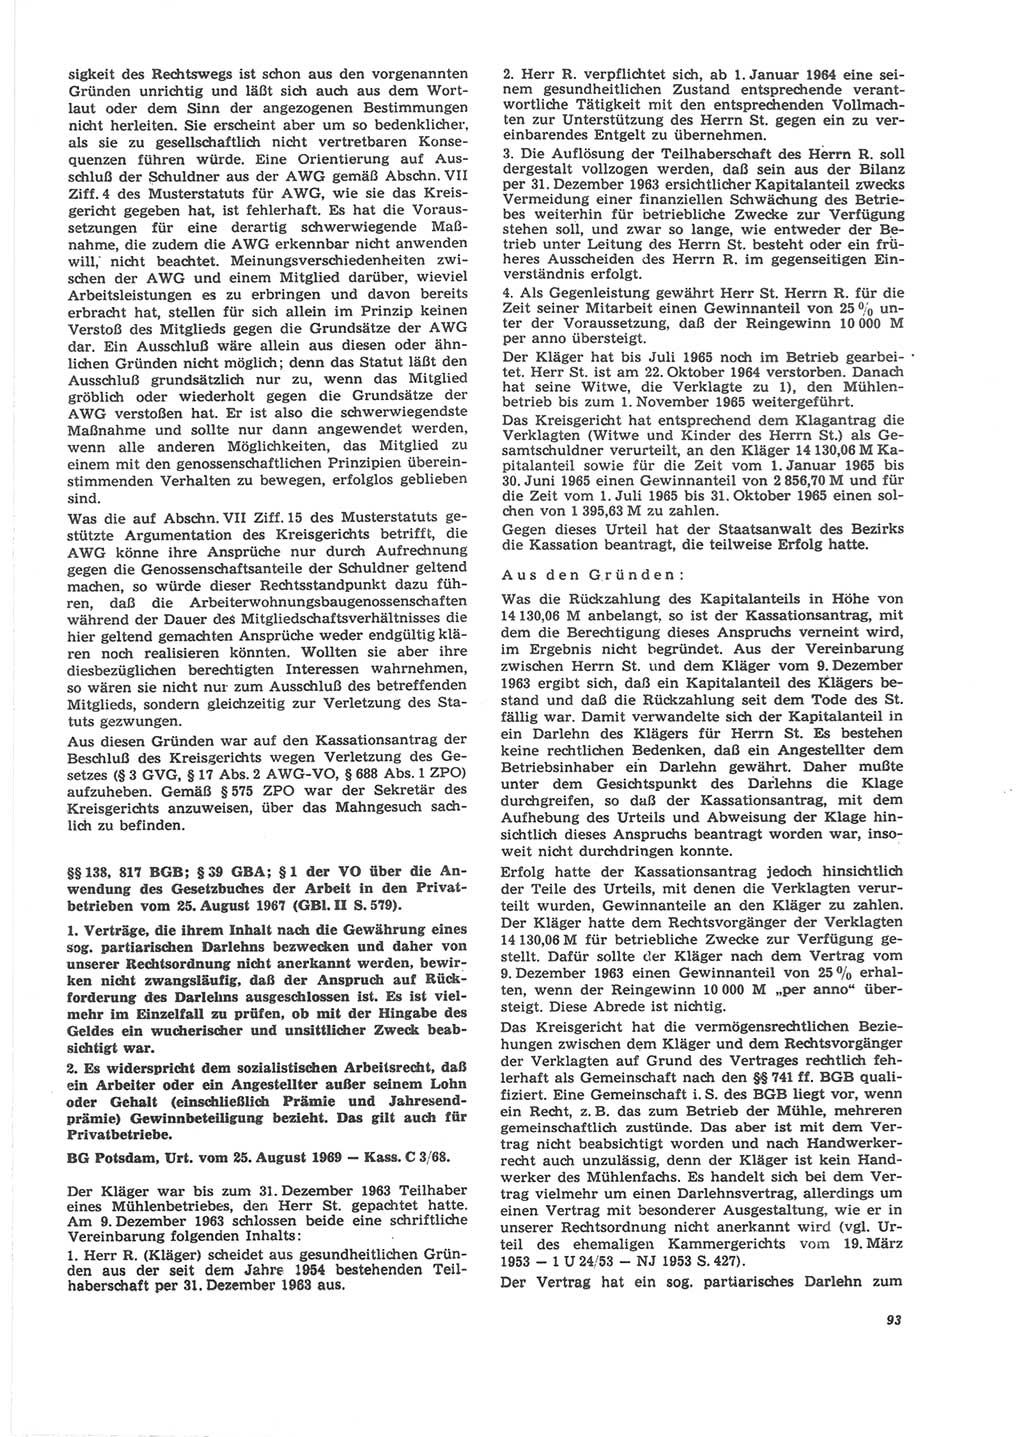 Neue Justiz (NJ), Zeitschrift für Recht und Rechtswissenschaft [Deutsche Demokratische Republik (DDR)], 24. Jahrgang 1970, Seite 93 (NJ DDR 1970, S. 93)